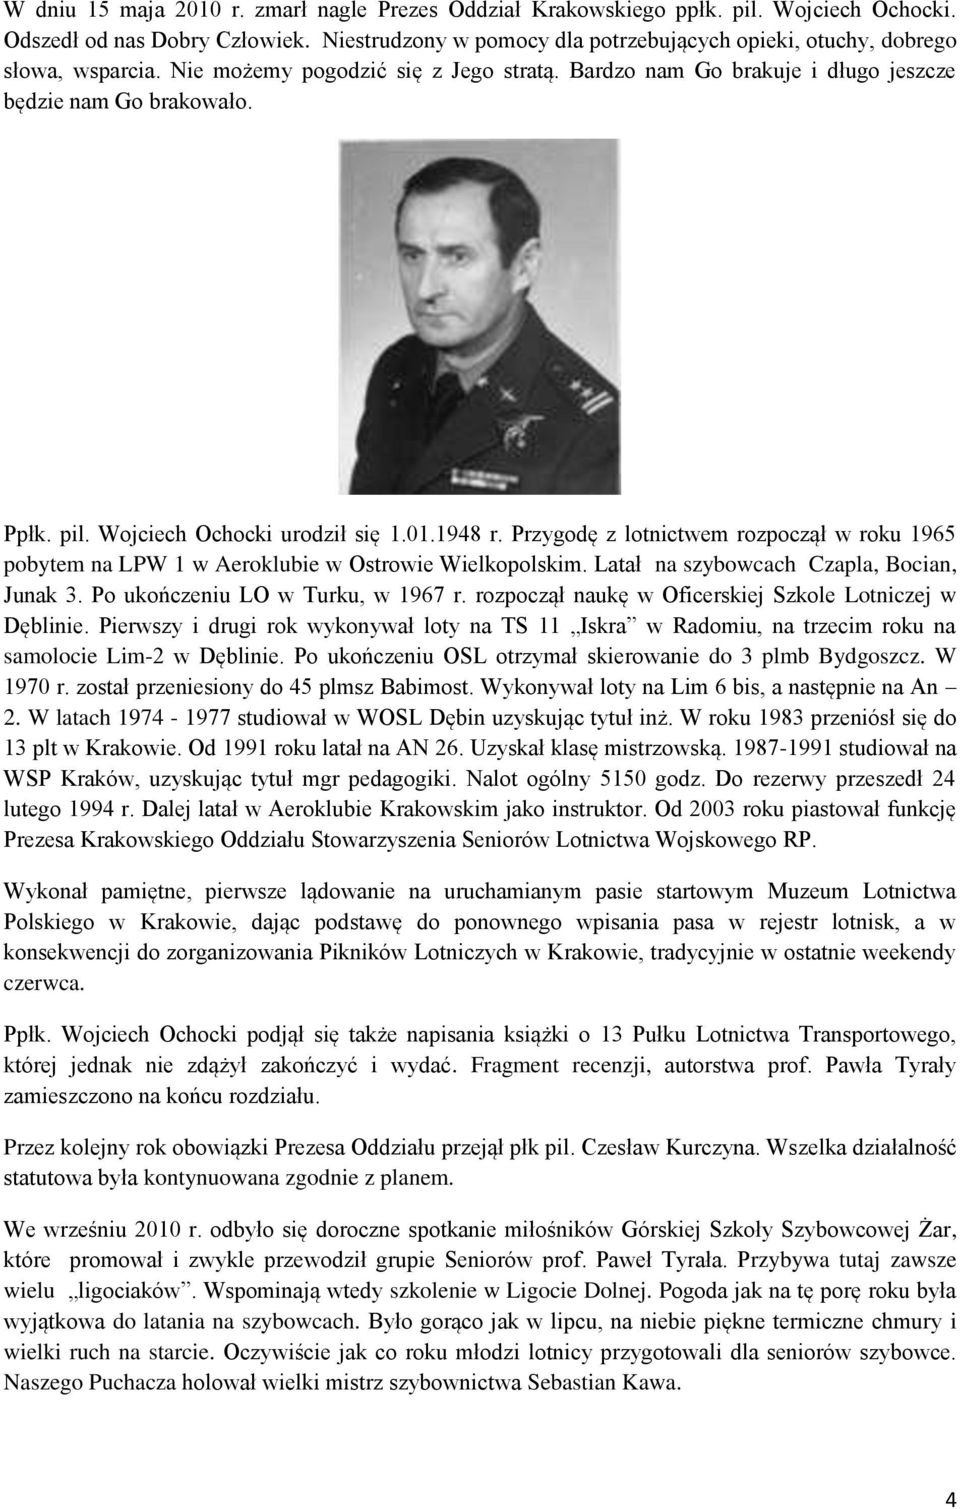 Wojciech Ochocki urodził się 1.01.1948 r. Przygodę z lotnictwem rozpoczął w roku 1965 pobytem na LPW 1 w Aeroklubie w Ostrowie Wielkopolskim. Latał na szybowcach Czapla, Bocian, Junak 3.